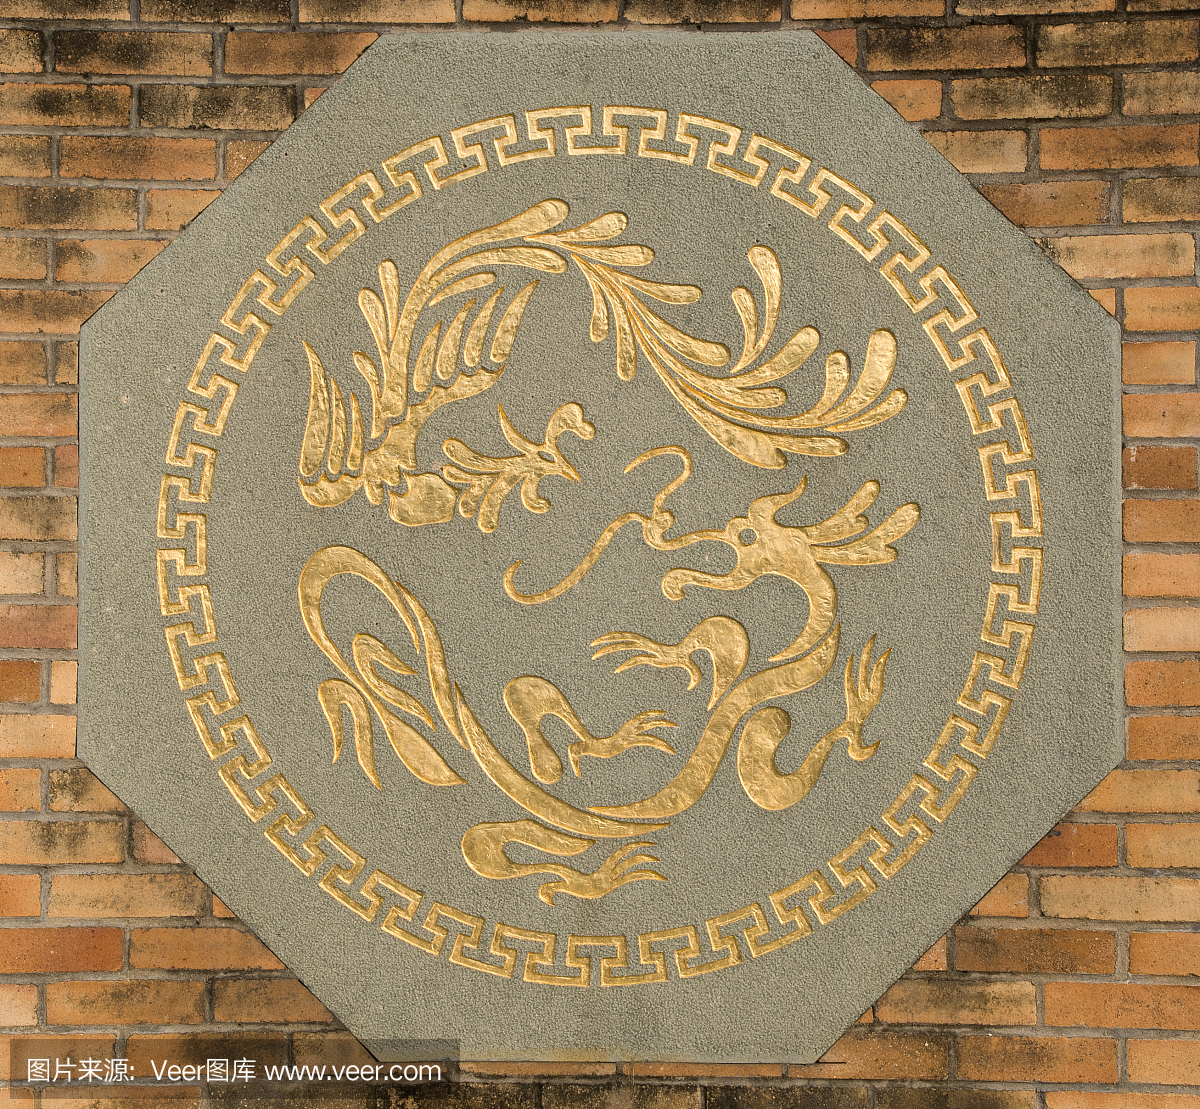 凤凰和龙象征在墙上,典型的中国人